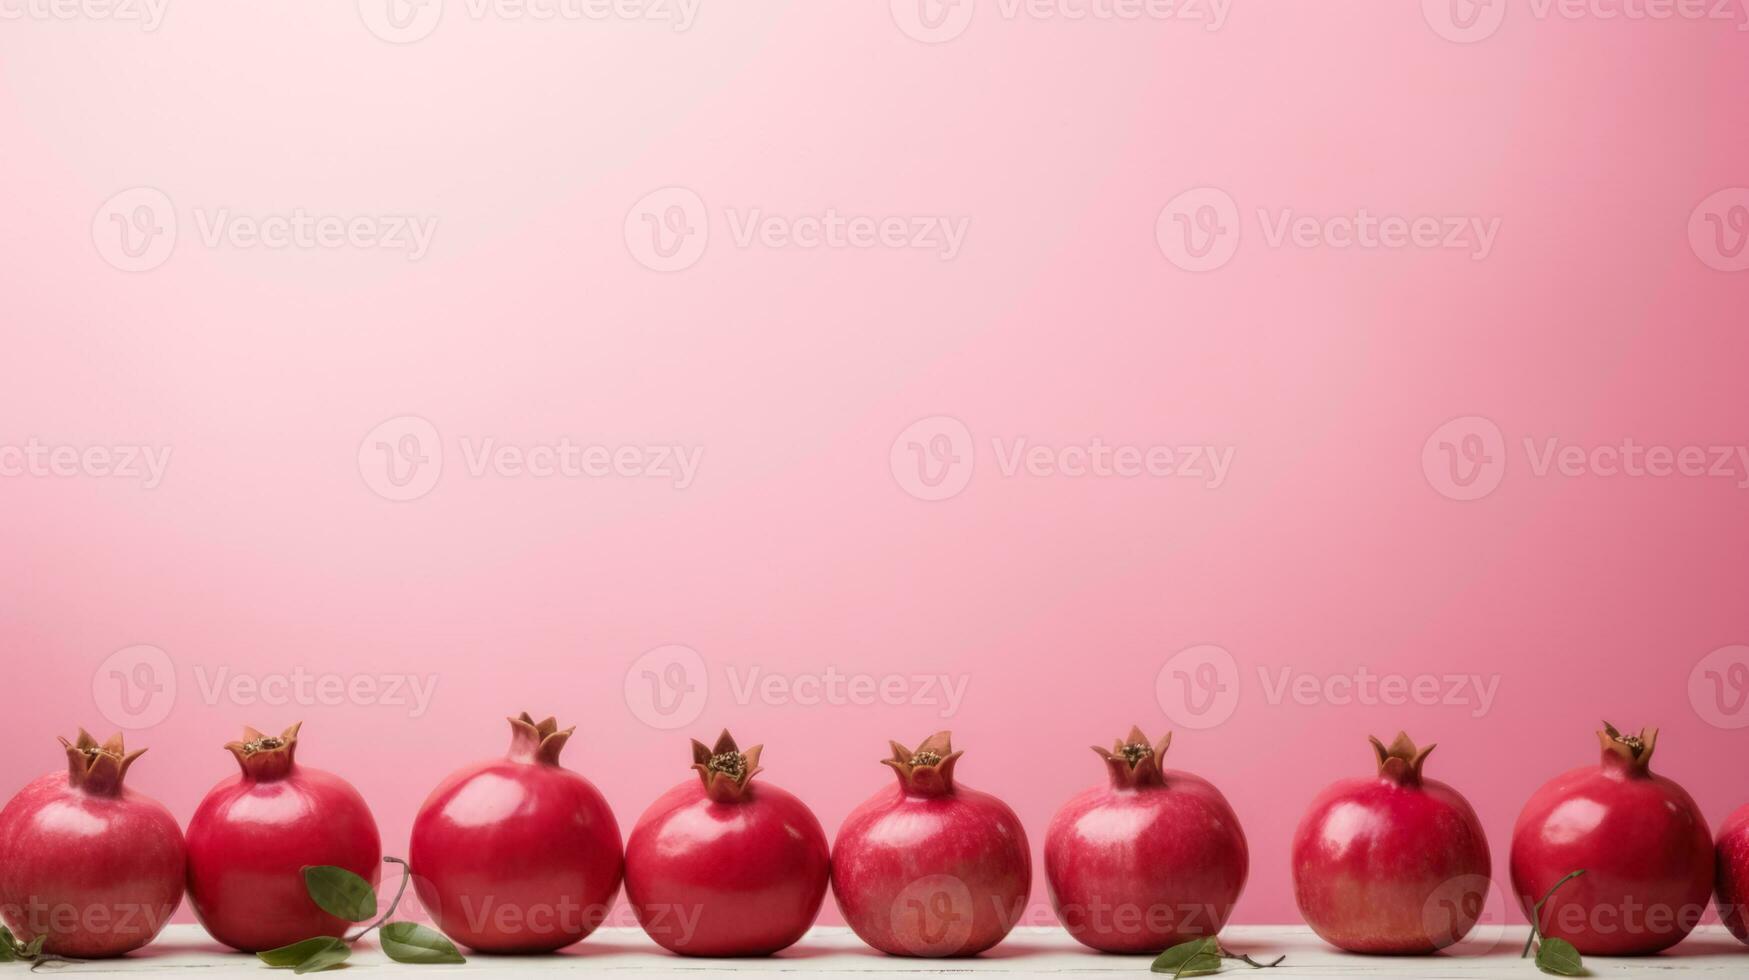 overkligt minimalism bakgrund med granatäpplen foto